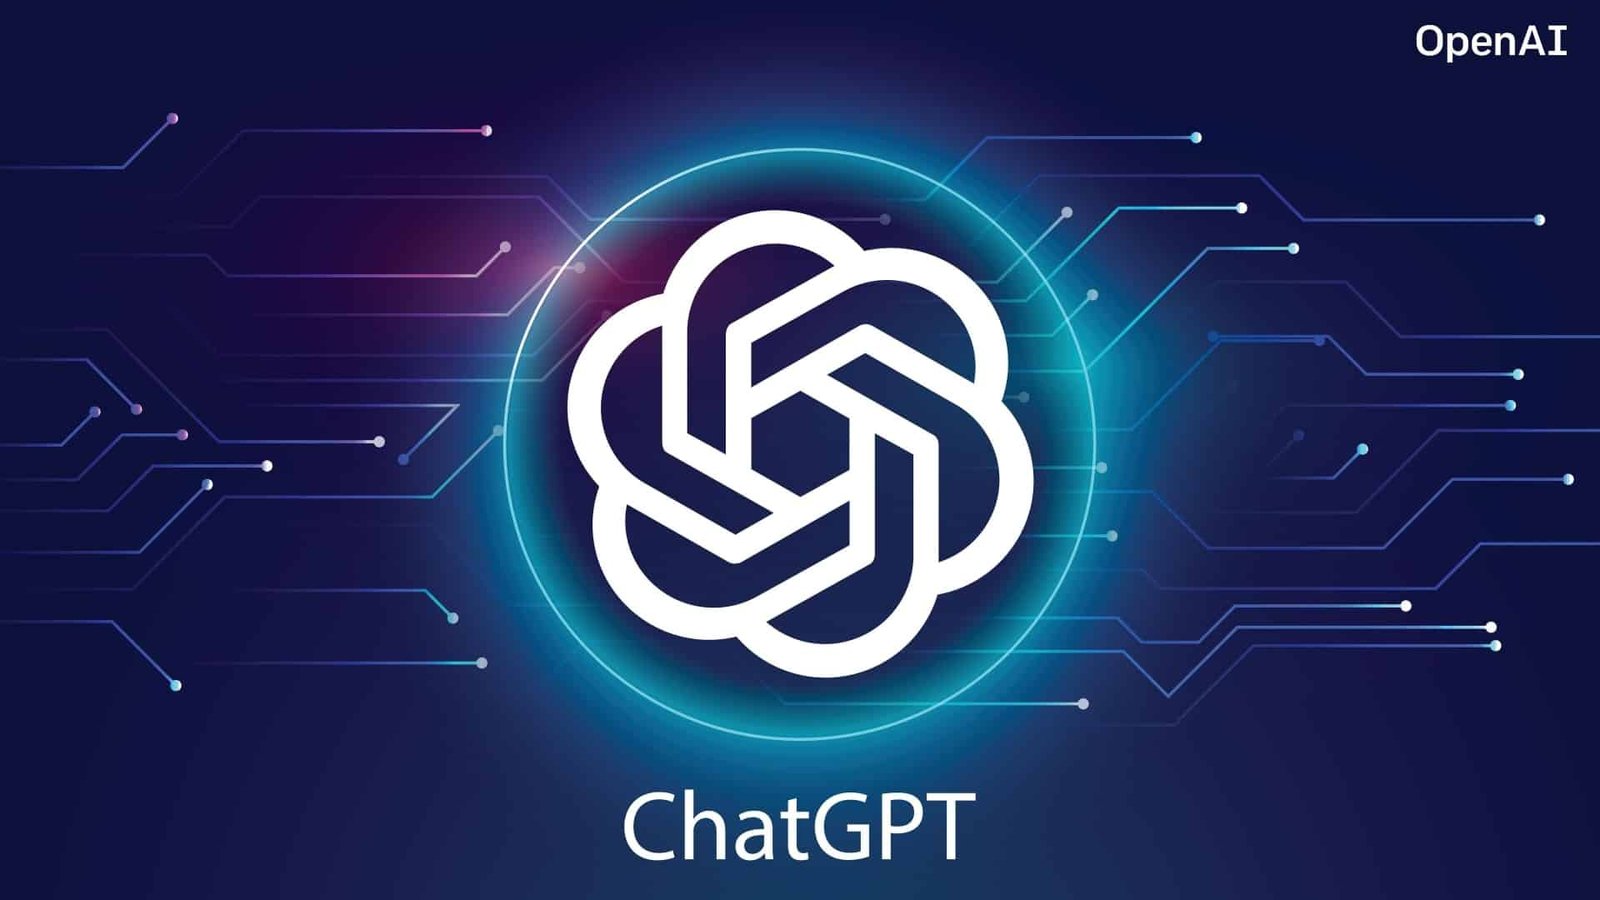 ChatGPT se connecte maintenant intégralement au Web :1 qu’est-ce que cela change ?